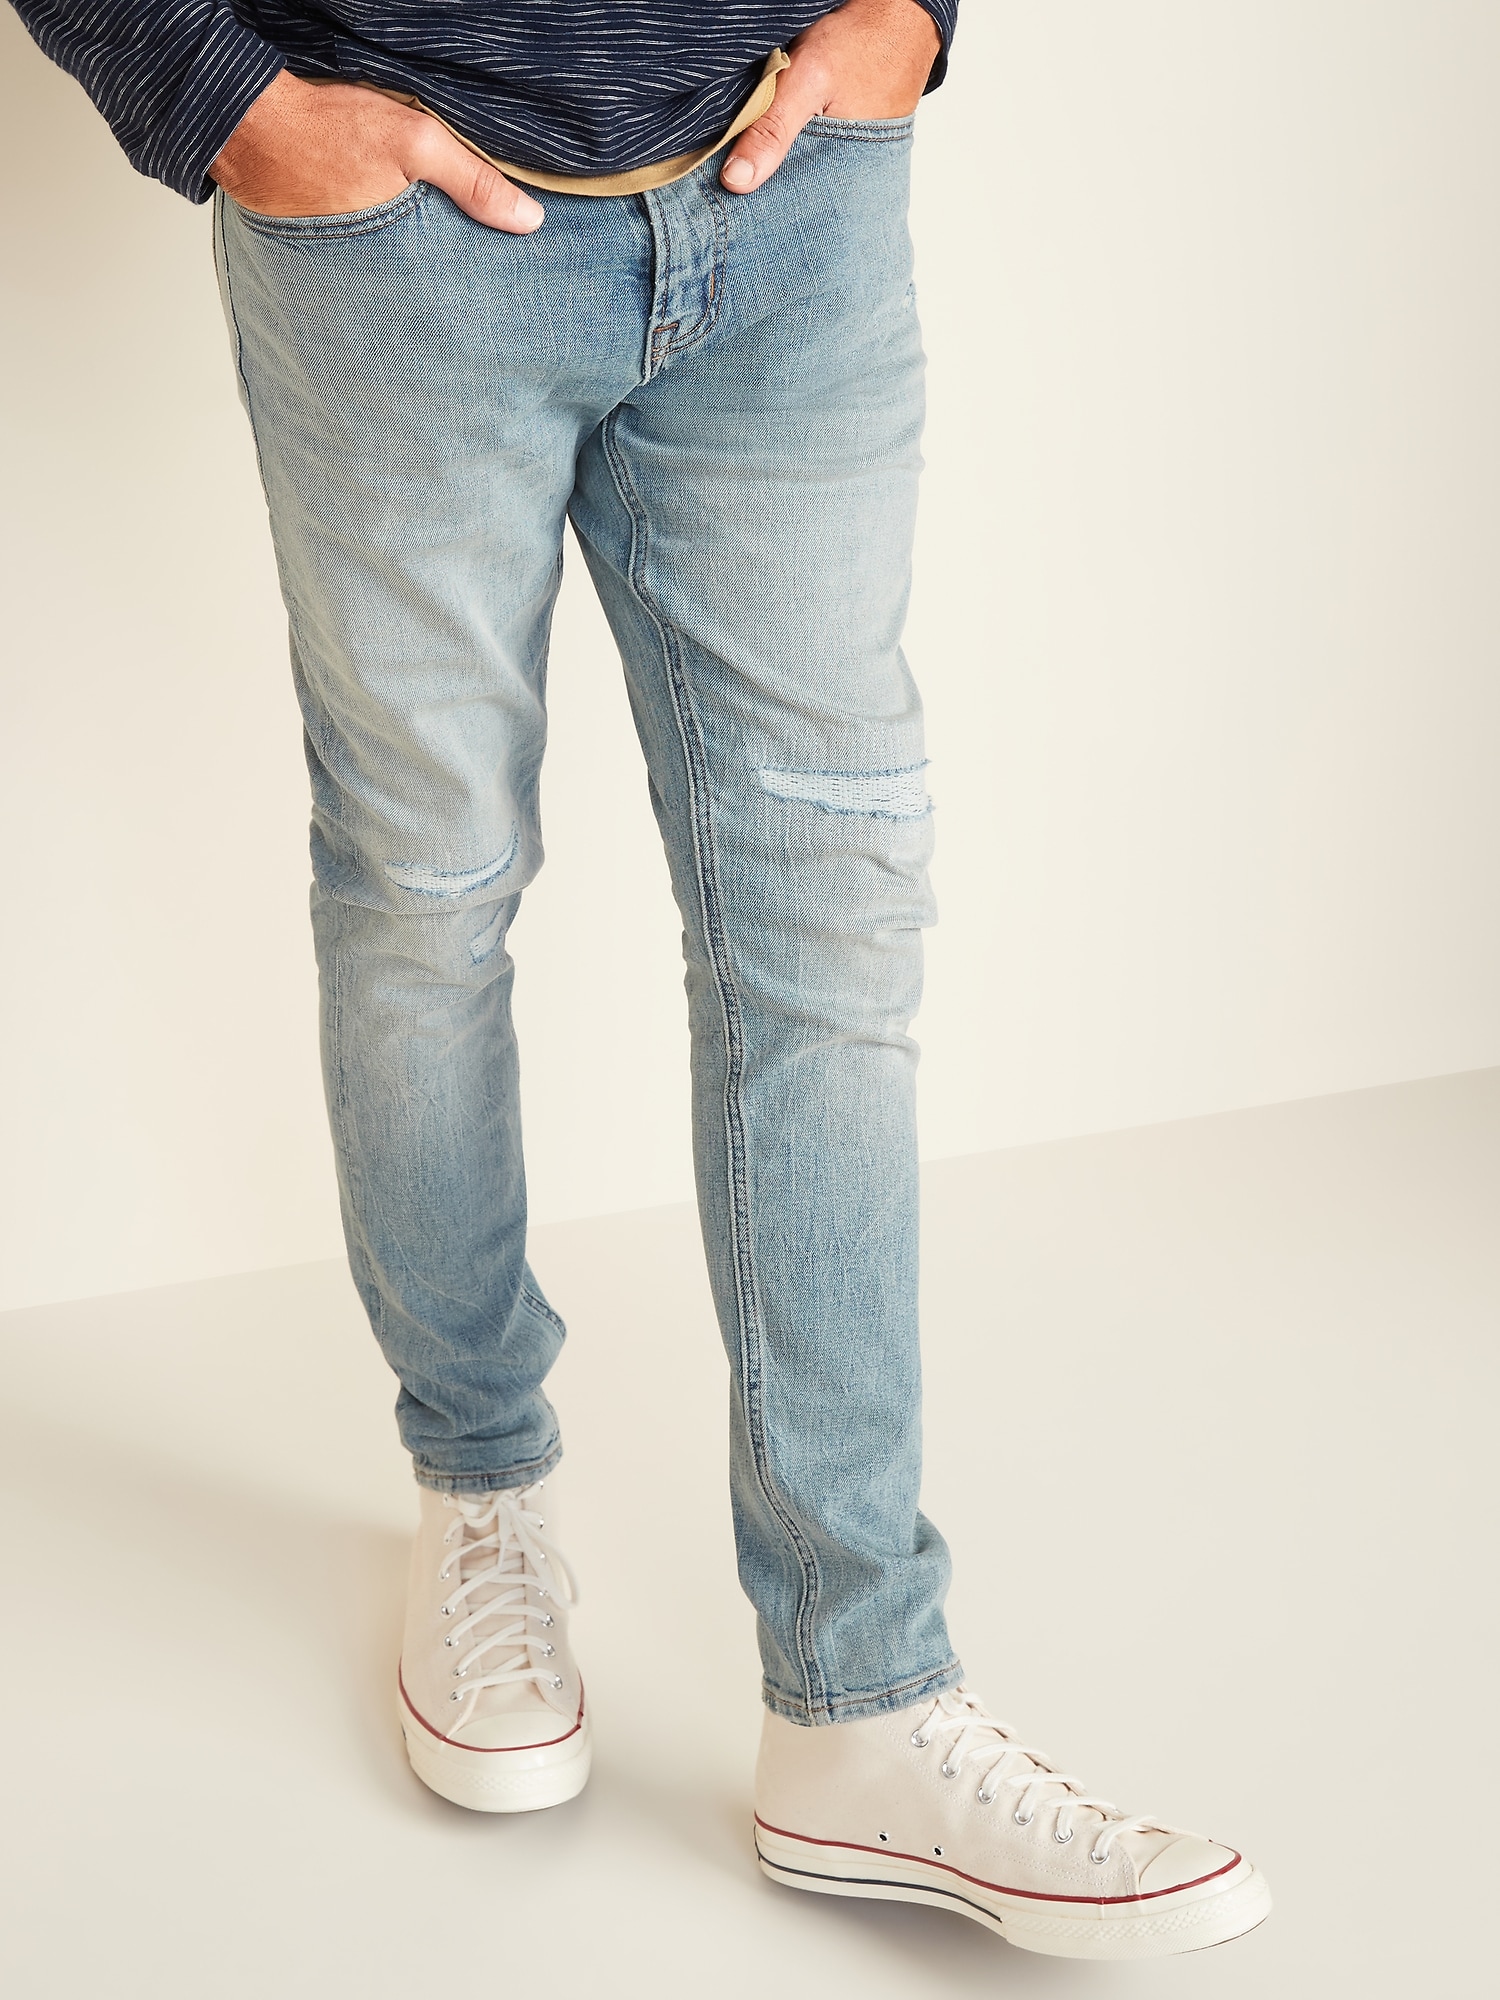 skinny taper jeans